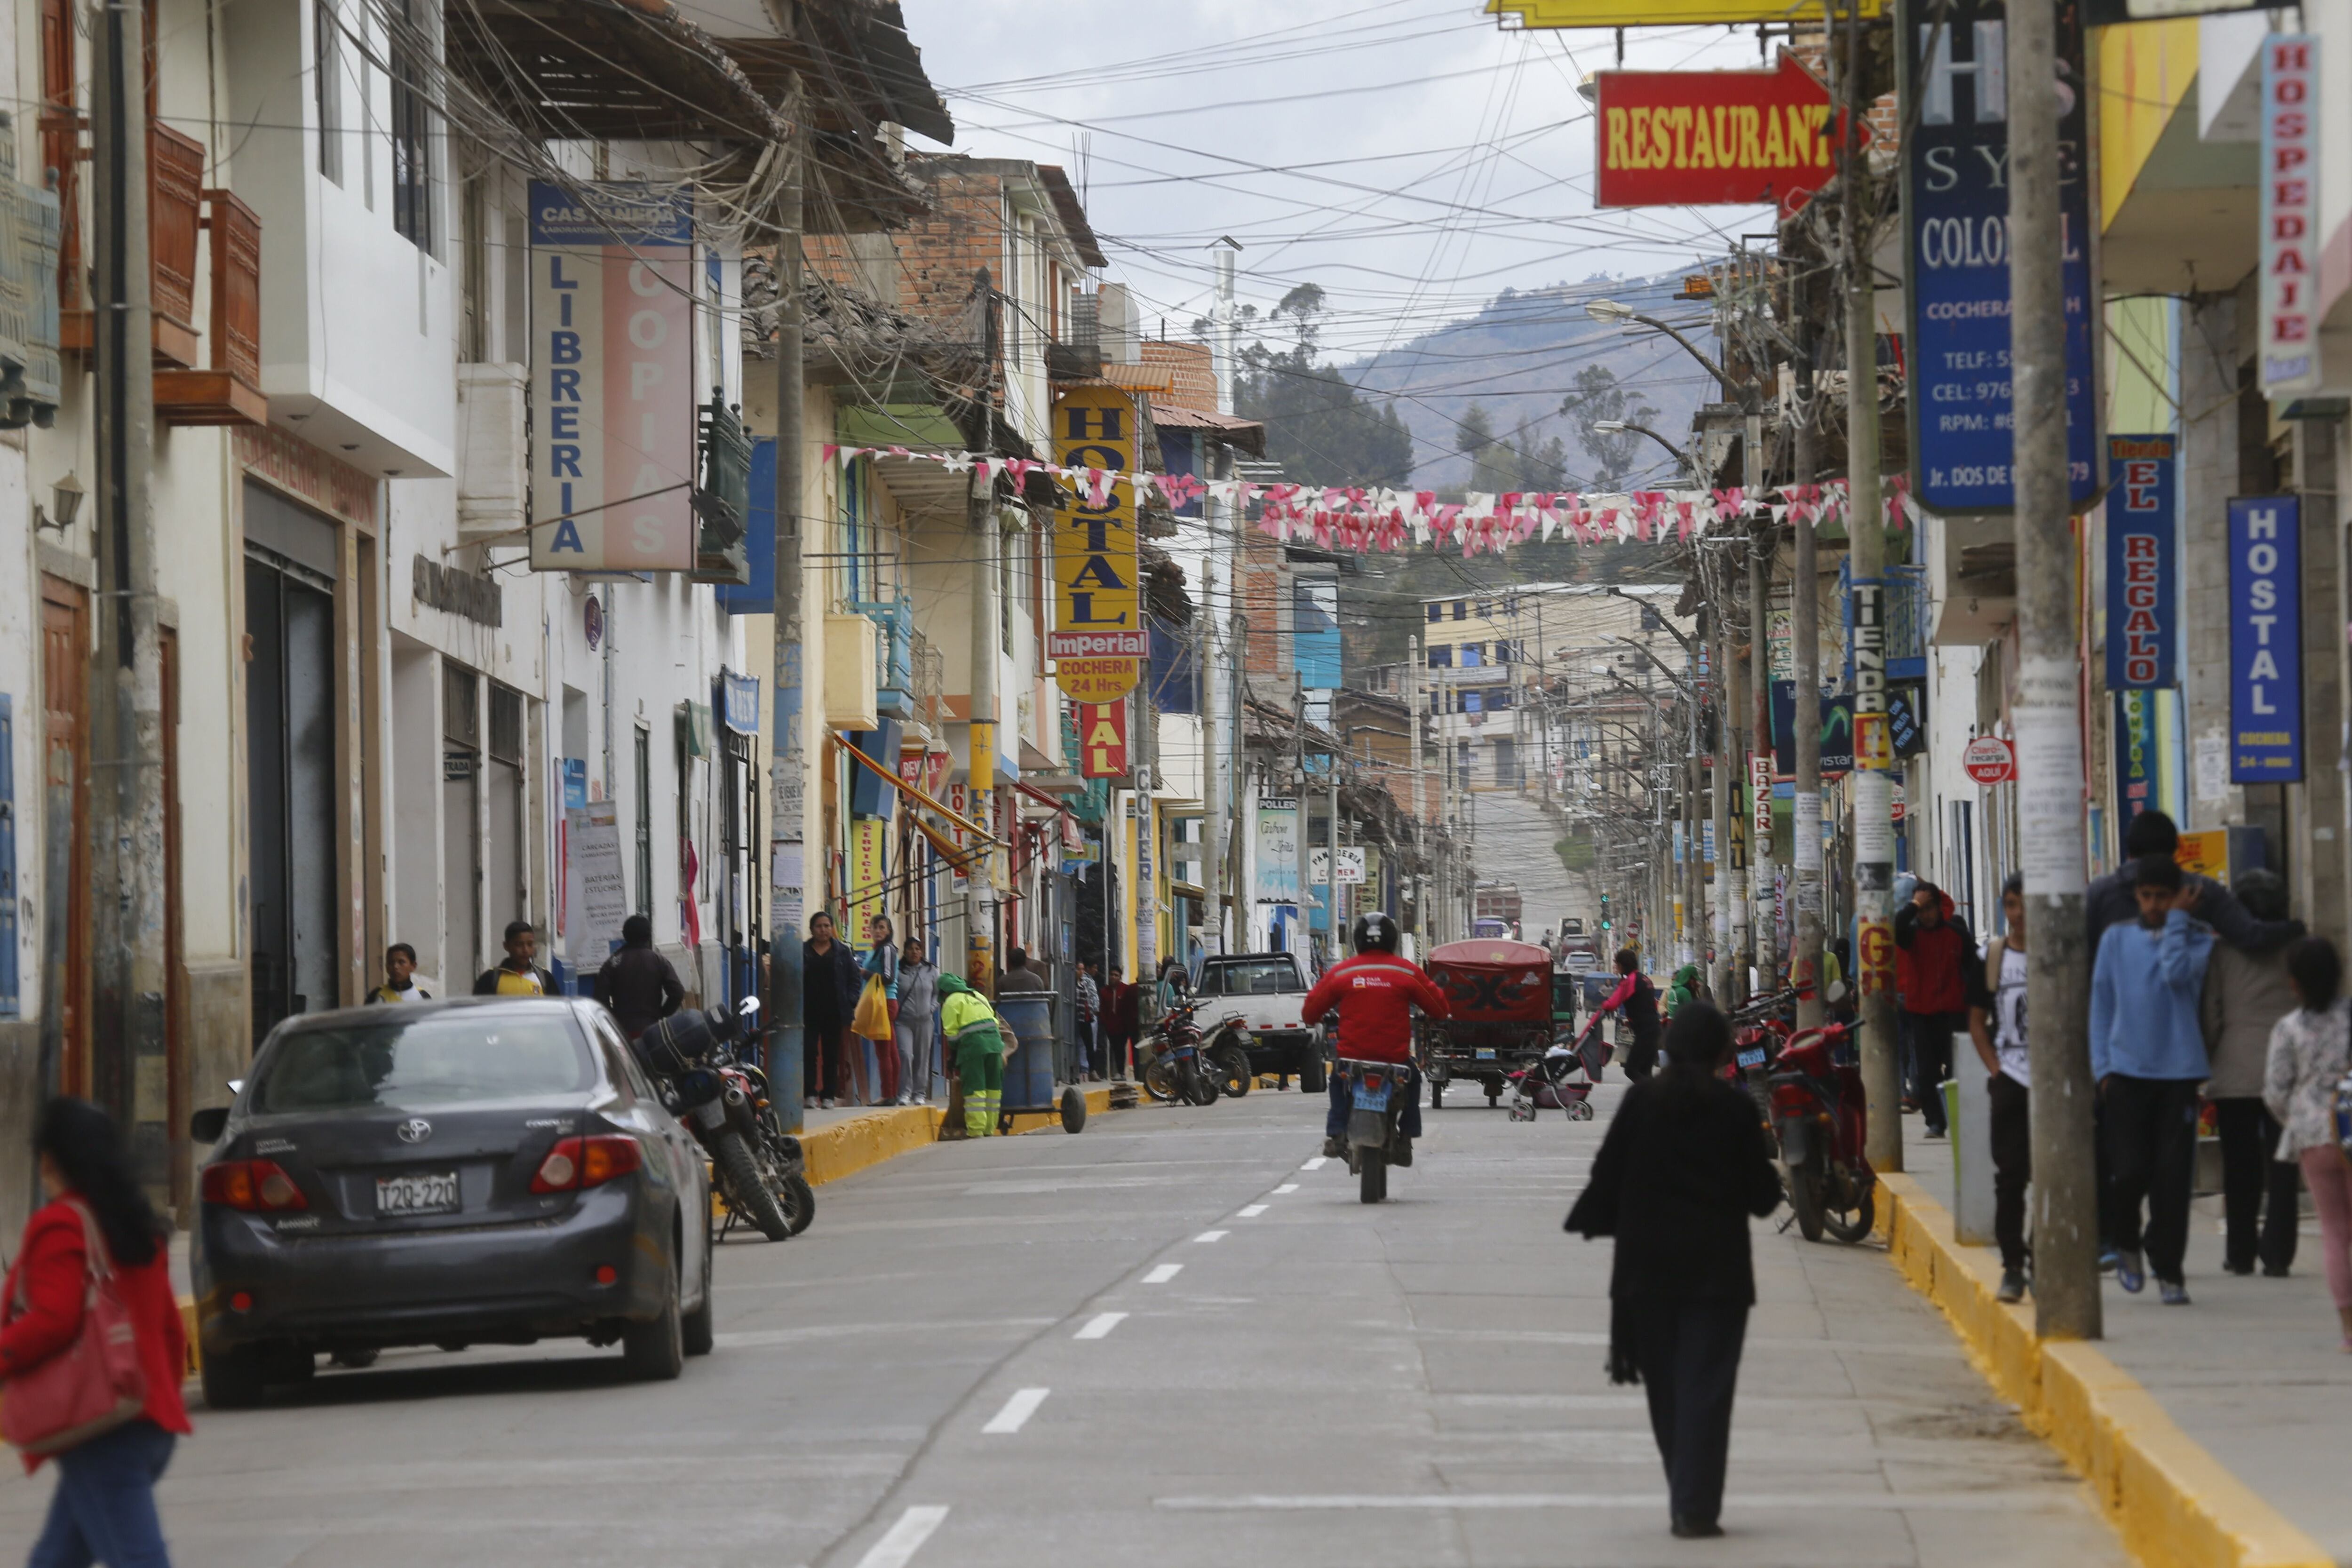 Alrededor de 33 mil negocios se registran en Cajamarca, según la Cámara de Comercio de Cajamarca, (Foto: Dante Piaggio)